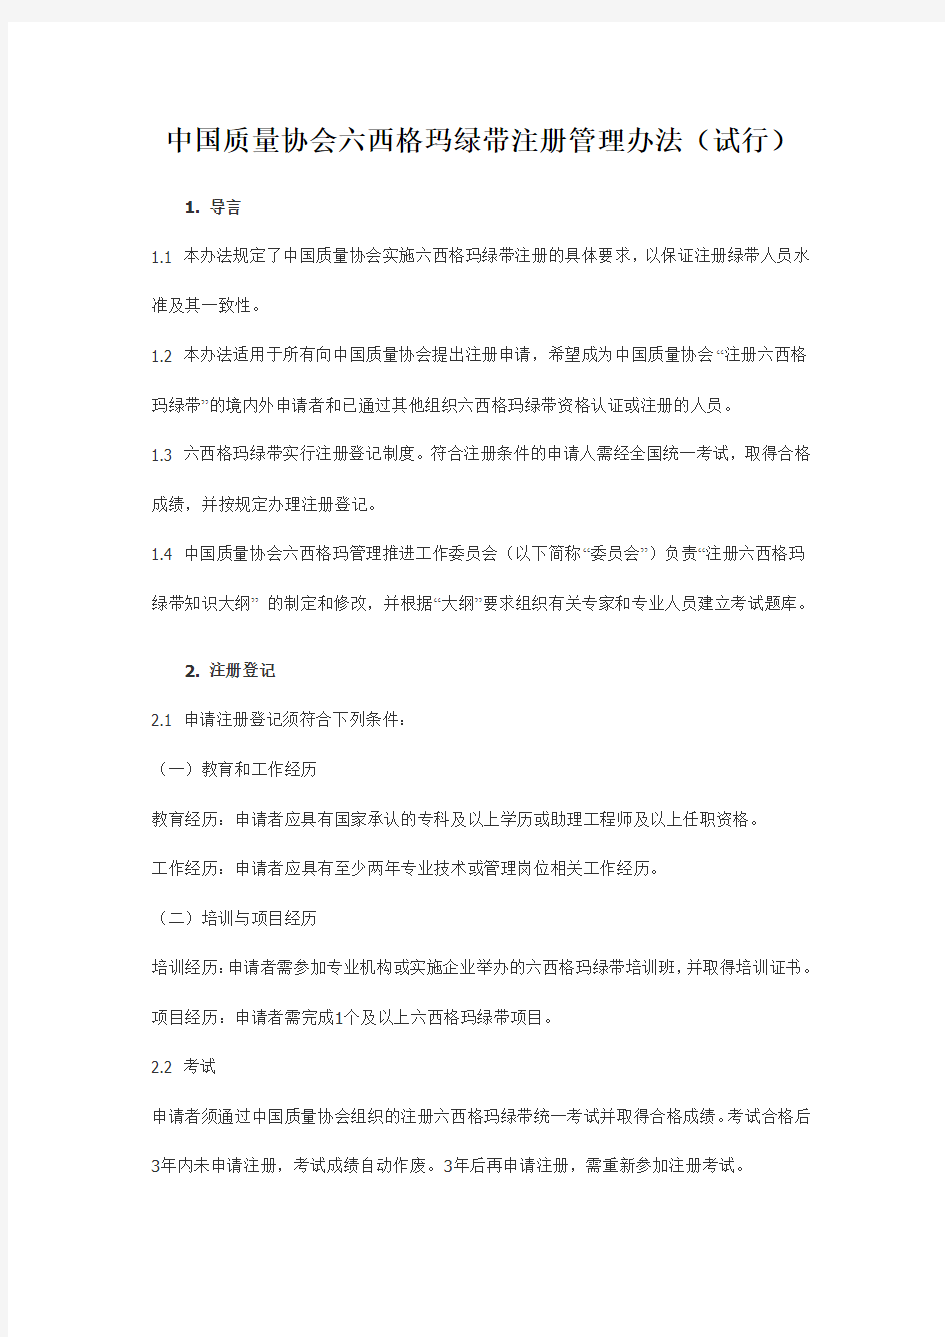 中国质量协会六西格玛绿带注册管理办法(试行)